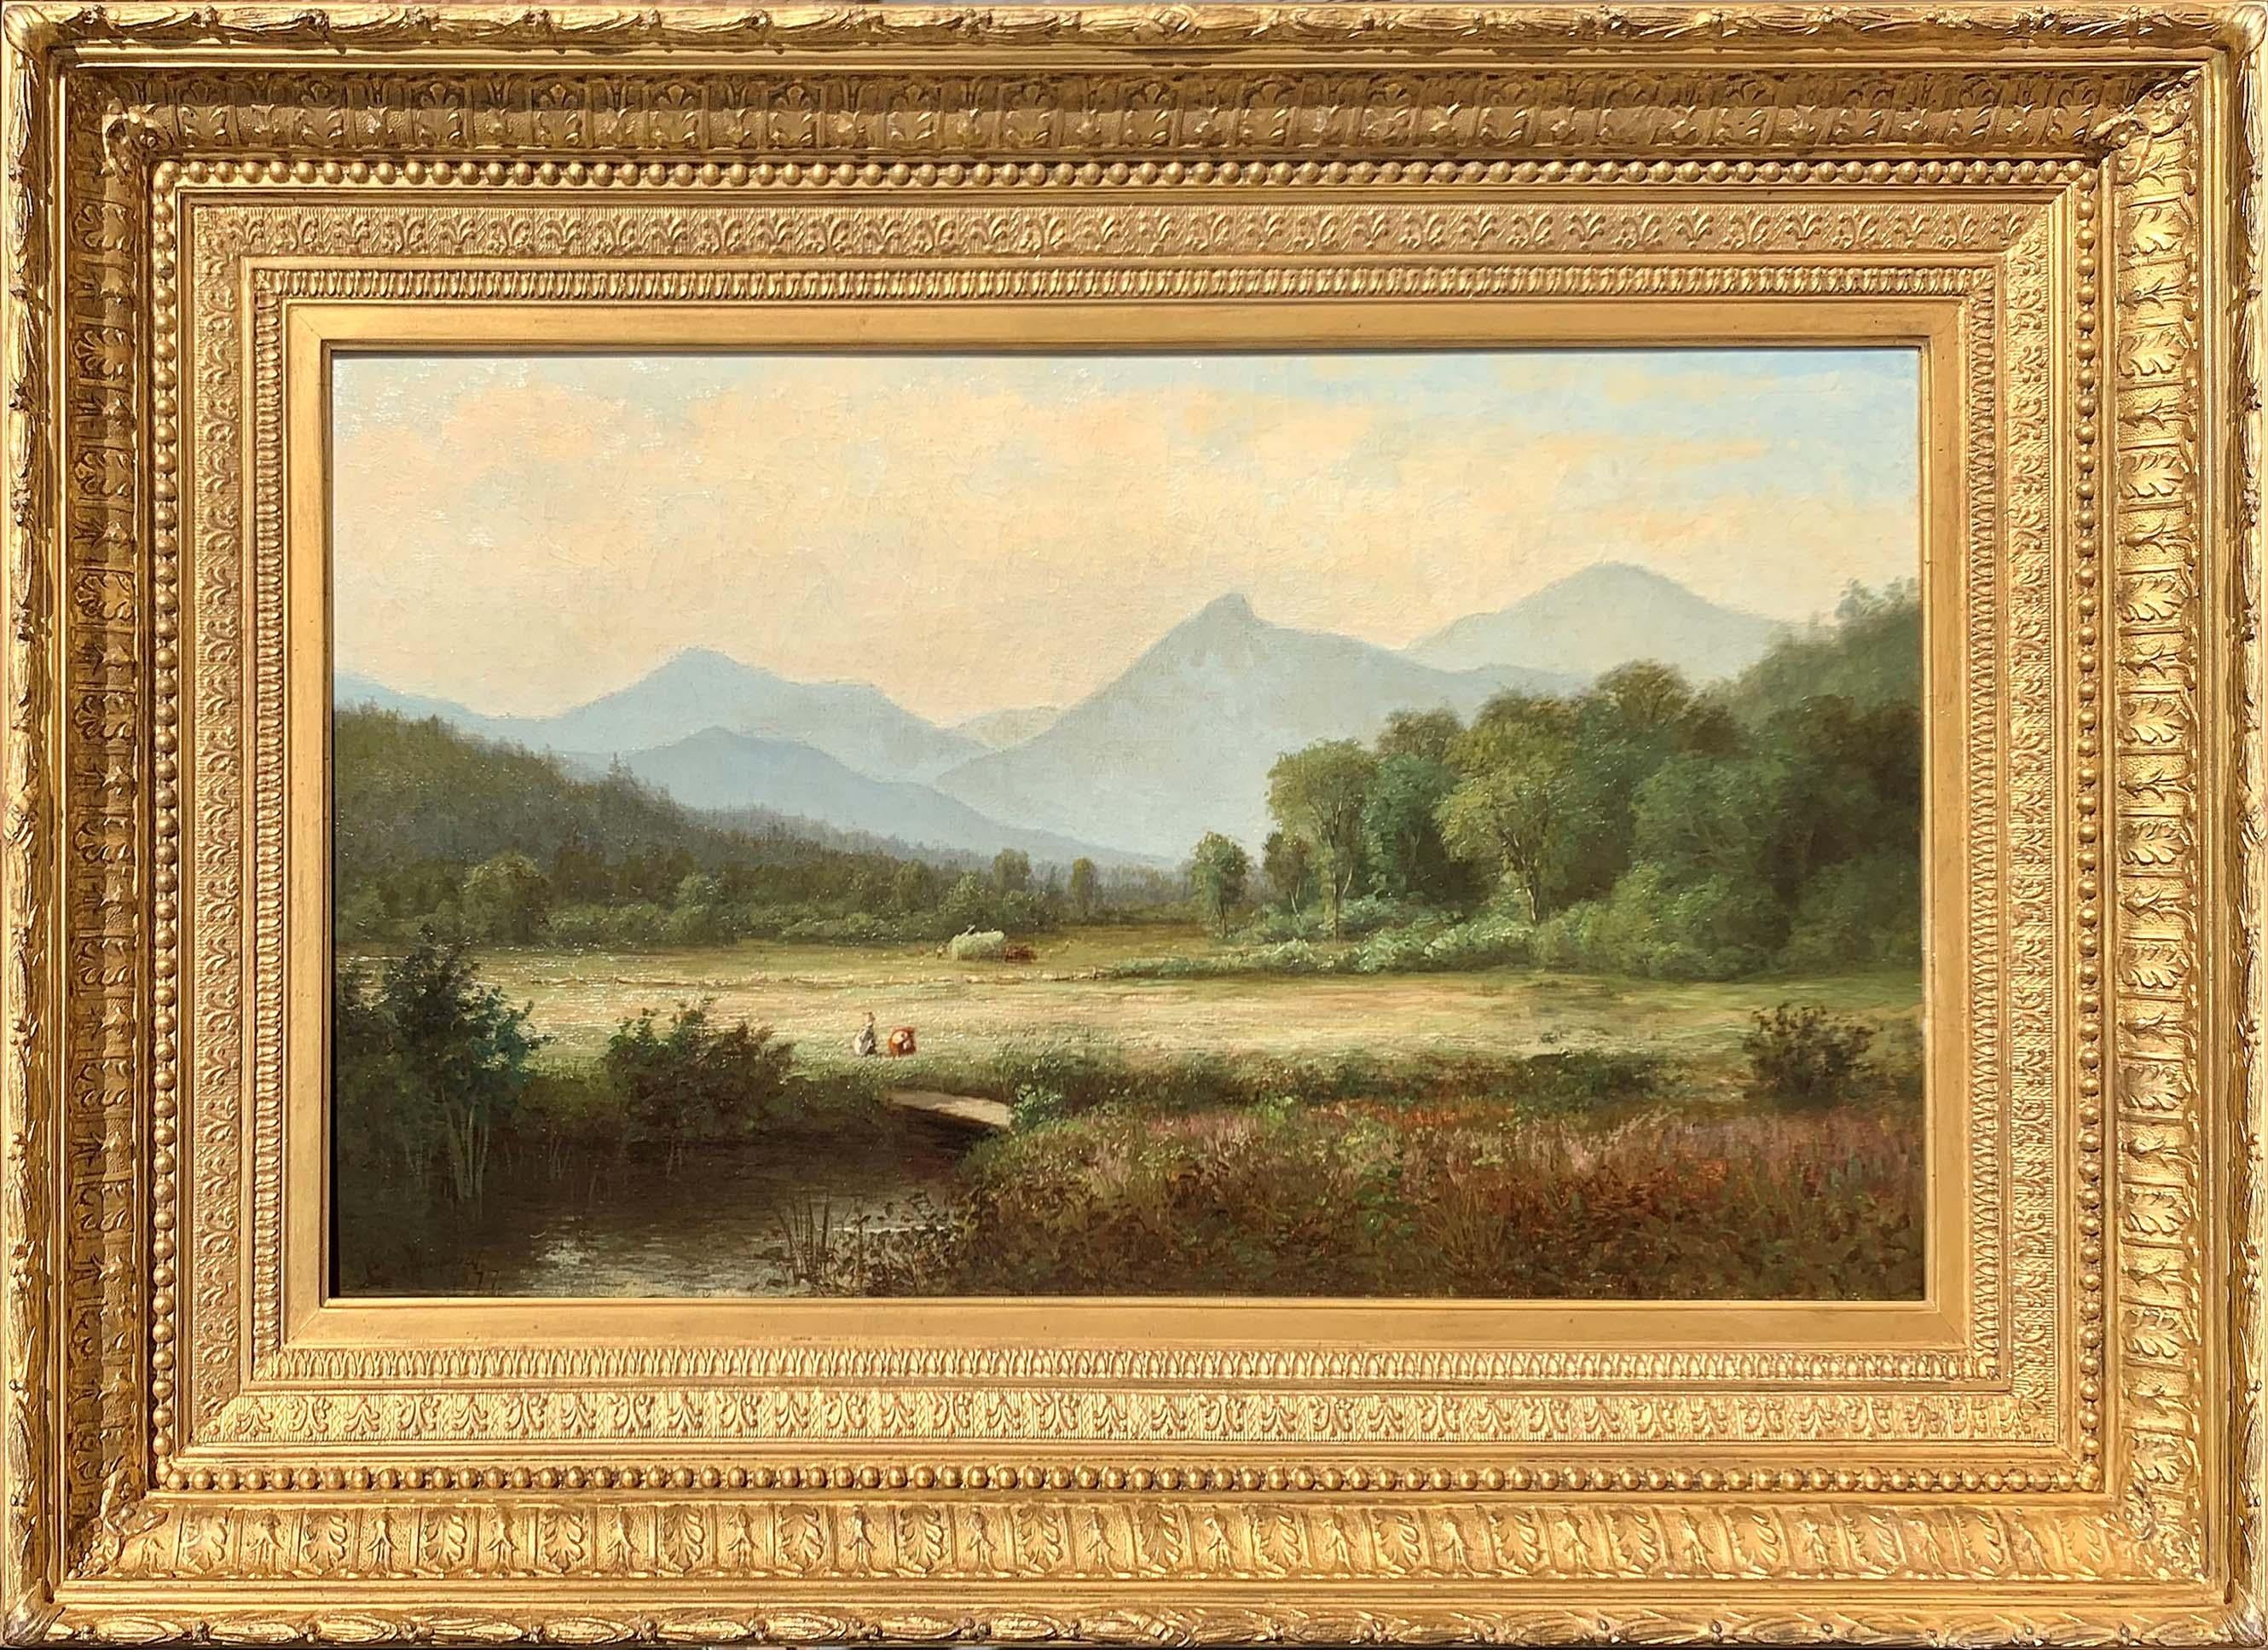 Das von der Hudson River School-Künstlerin Laura Woodward (1834-1926) gemalte Gemälde "Camel's Hump, Vermont" (1877) ist in Öl auf Leinwand gemalt und misst 14 x 24 Zoll. Es ist unten links signiert und datiert. Das Werk ist in einem eleganten und